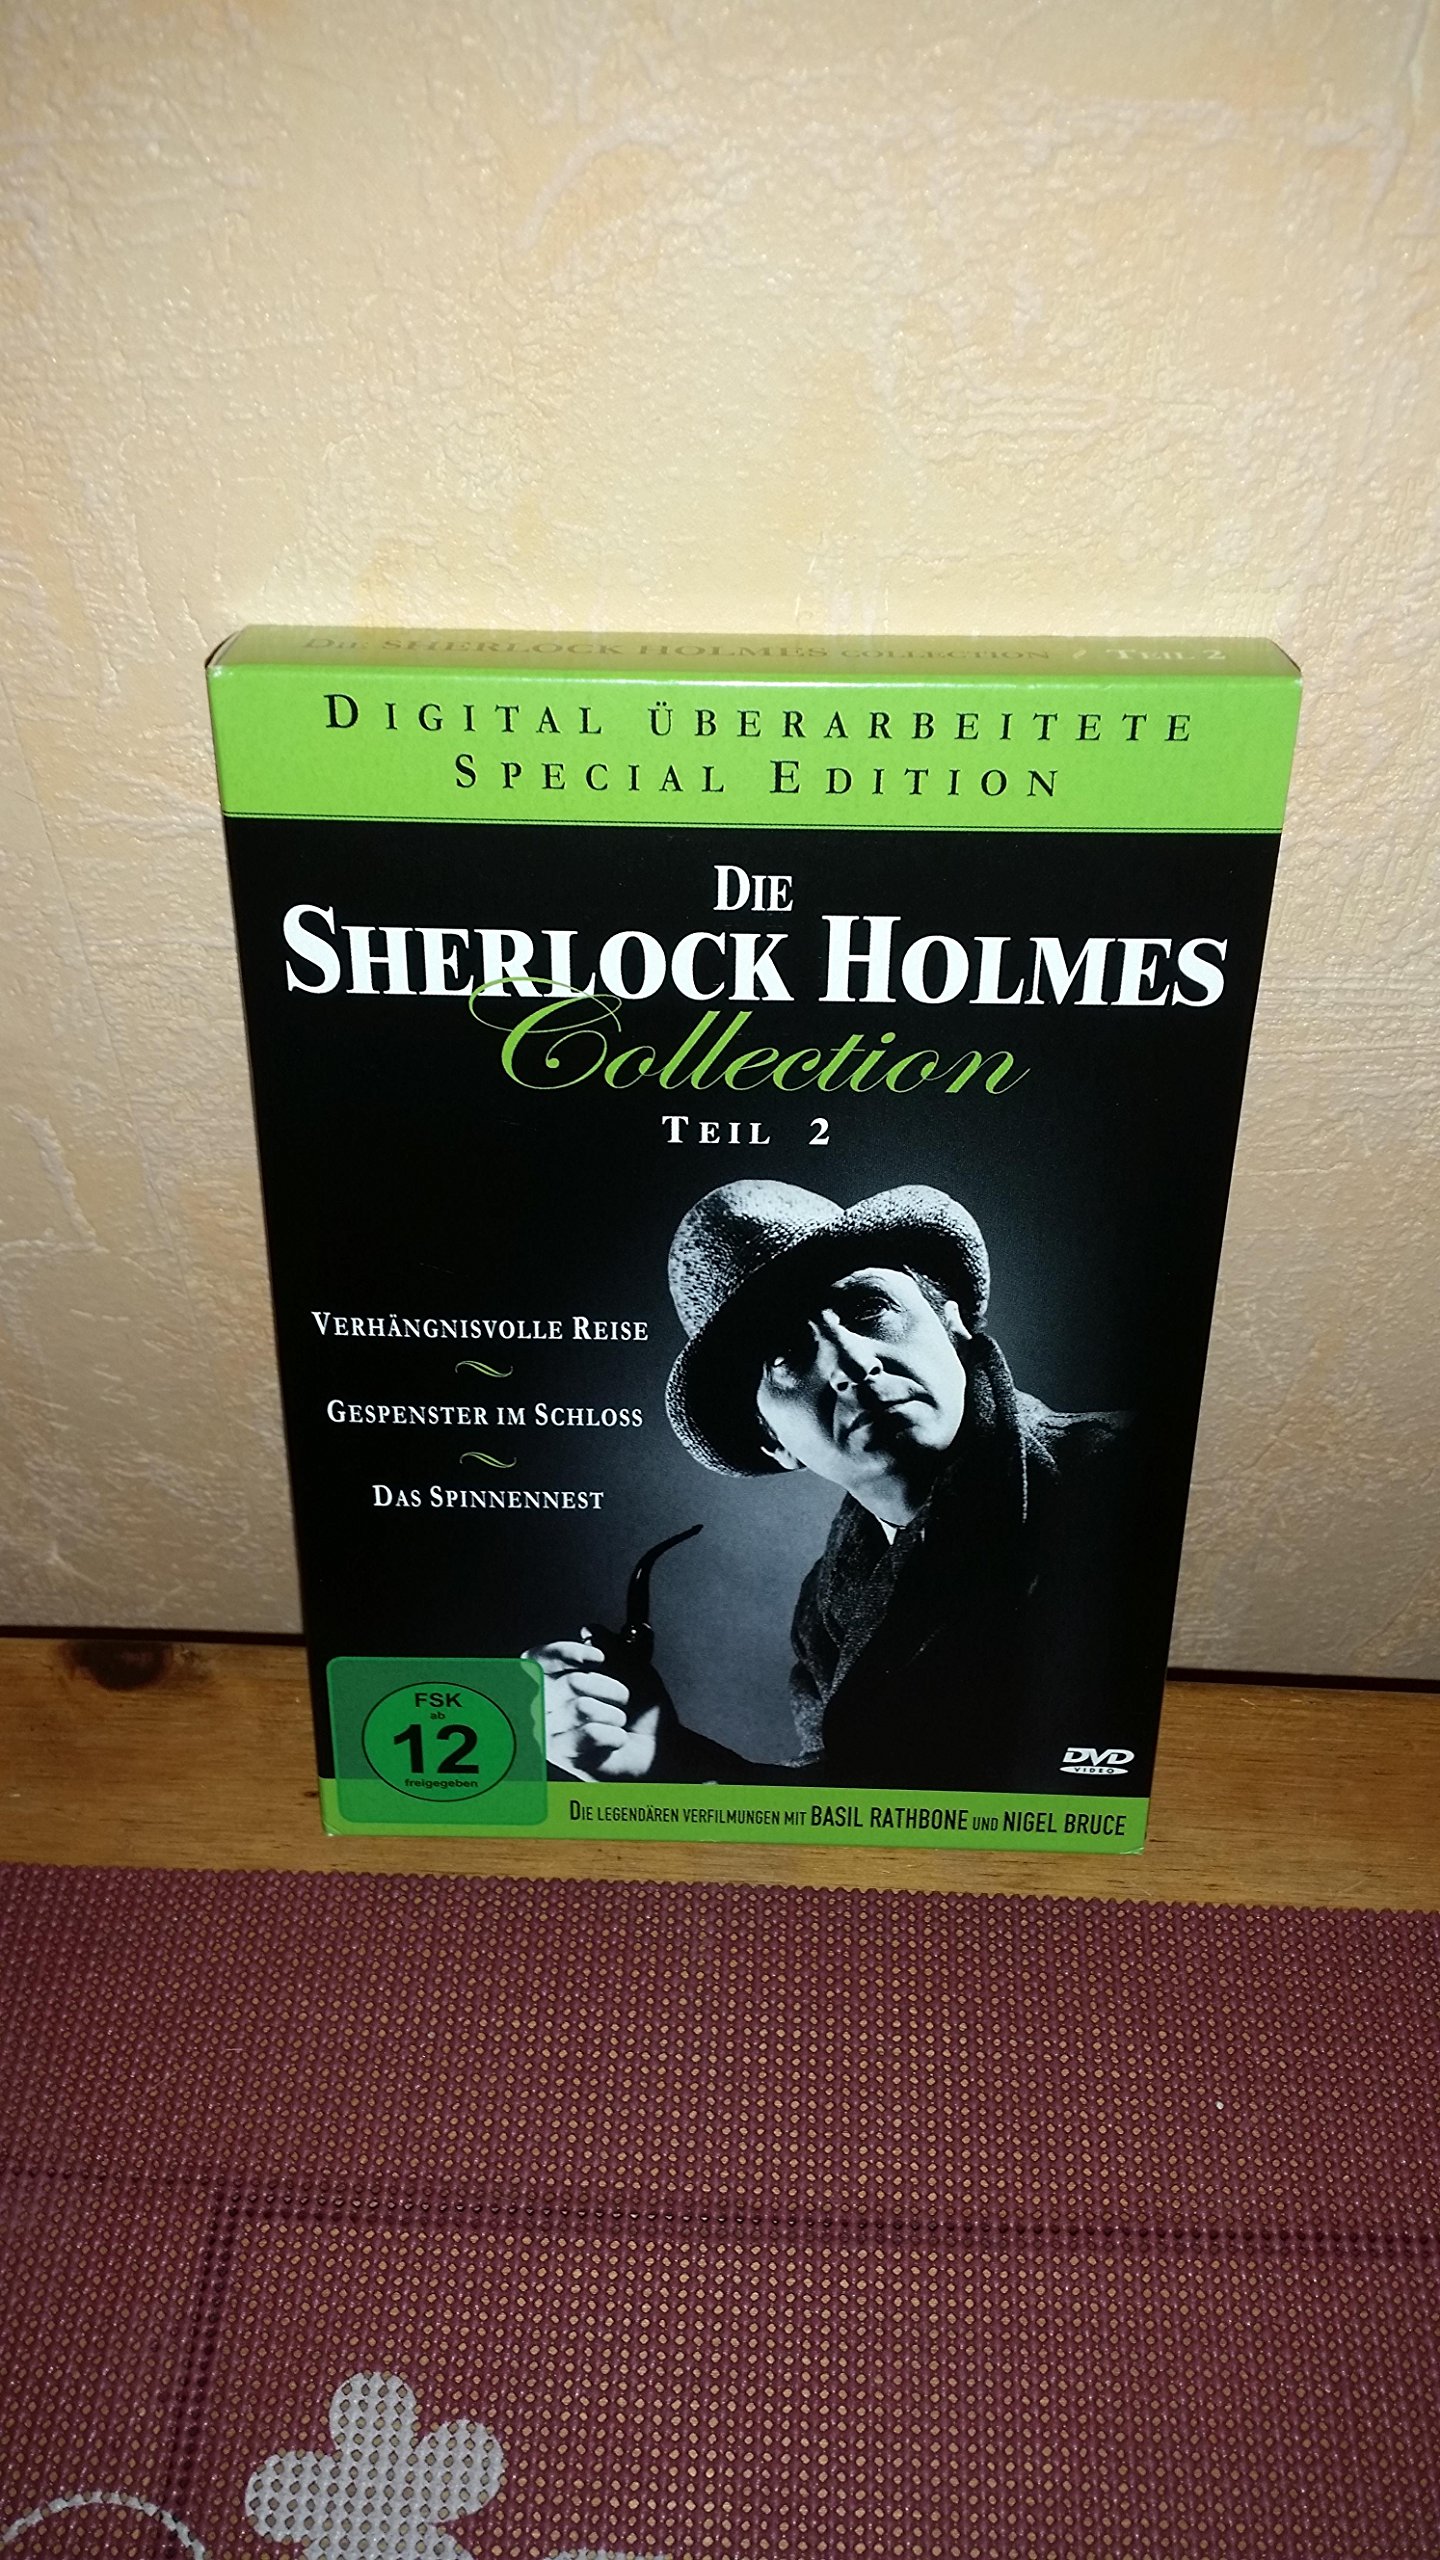 Die Sherlock Holmes Collection 2 (Verhängnisvolle Reise / Gespenster im Schloss / Das Spinnennest ) [3 DVDs]